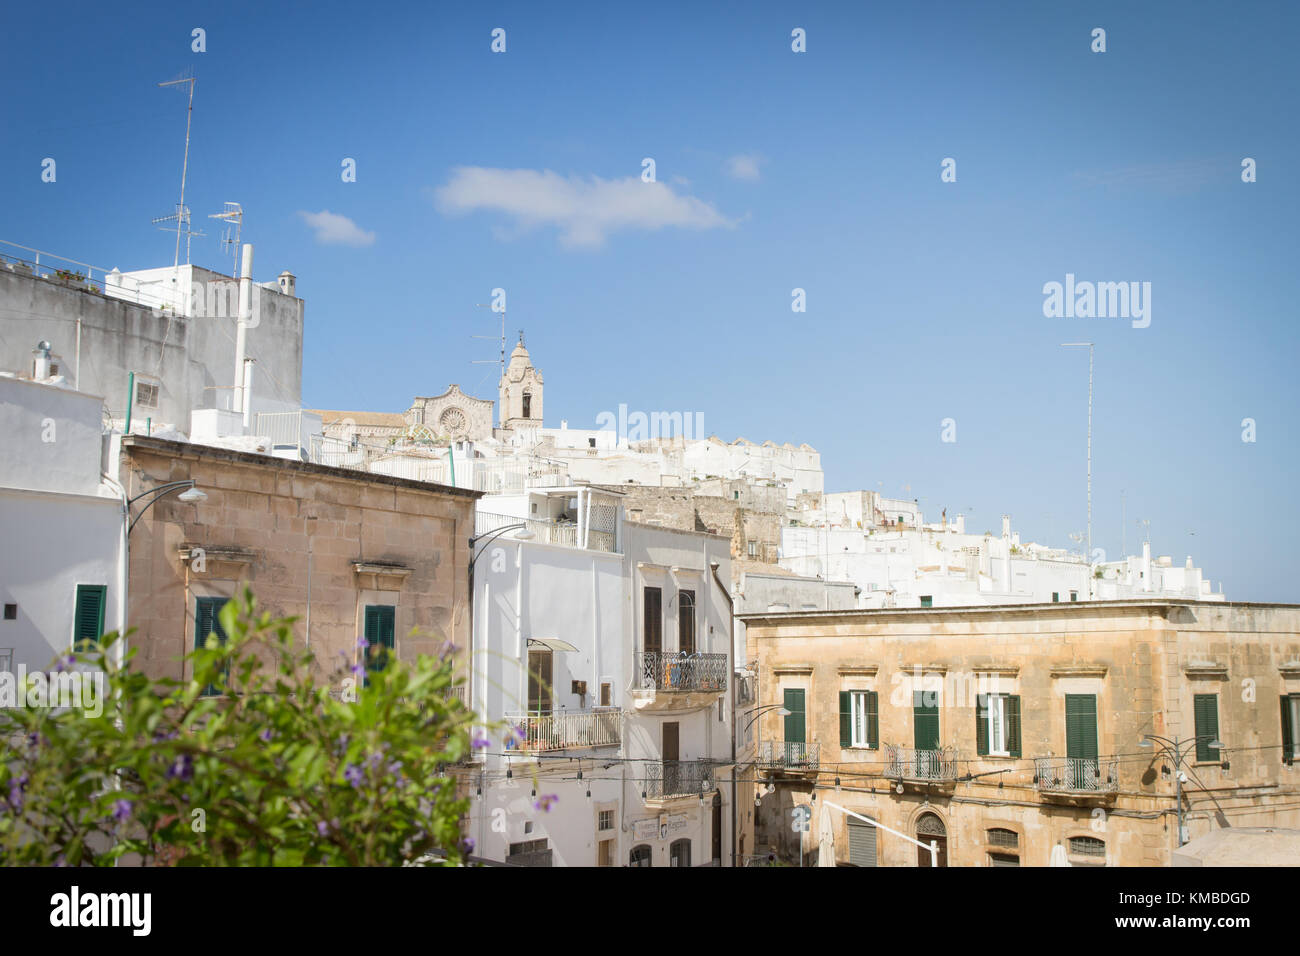 Vista panoramica di ostuni in puglia, italia, noto anche come "la città bianca". Foto Stock